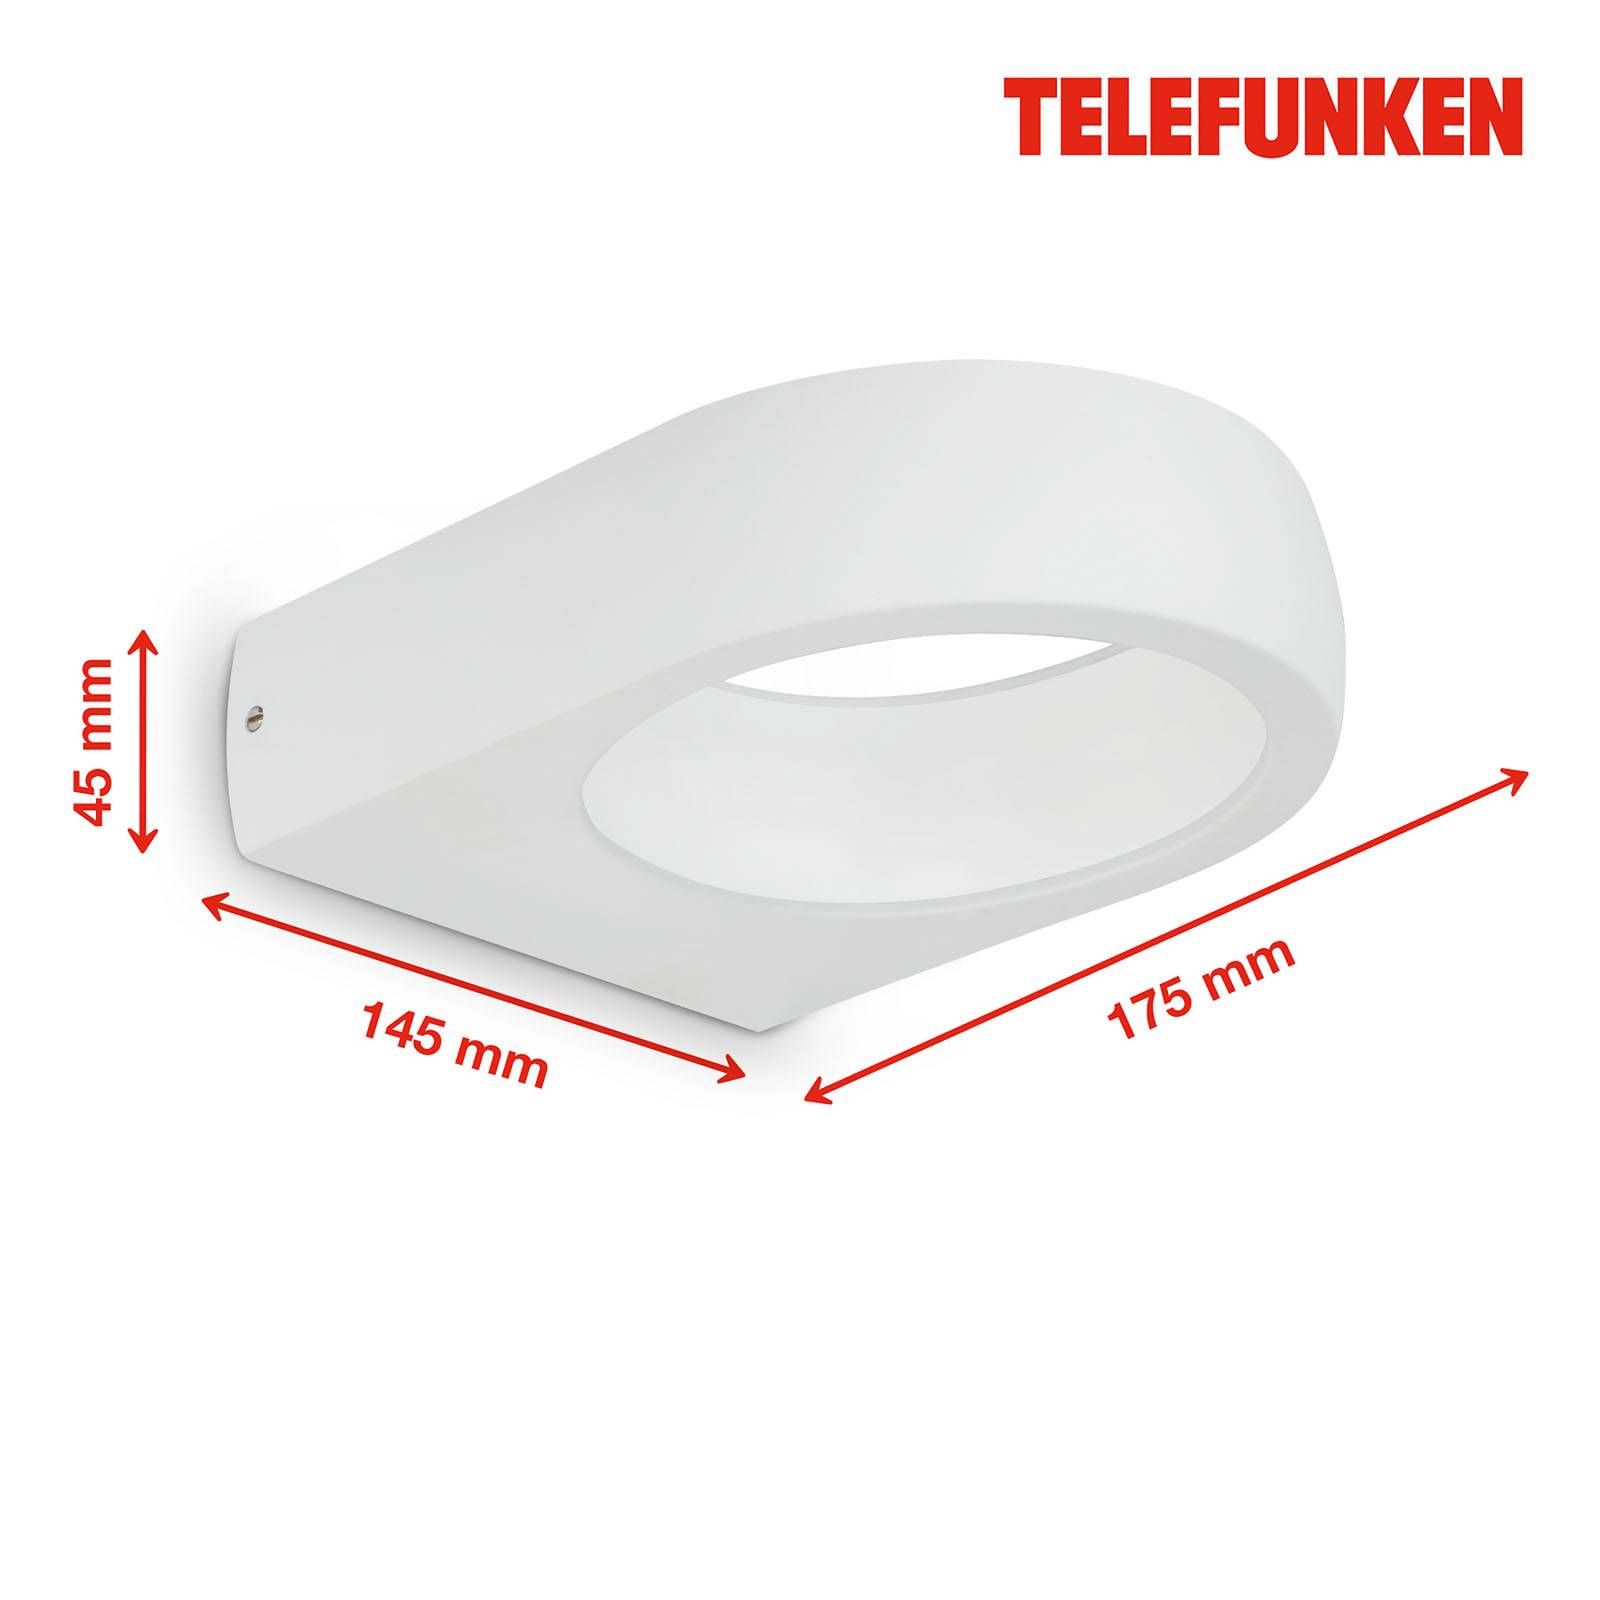 Telefunken Puka vonkajšie LED svietidlo, biela, kov, plast, 7.5W, L: 14.5 cm, K: 4.5cm